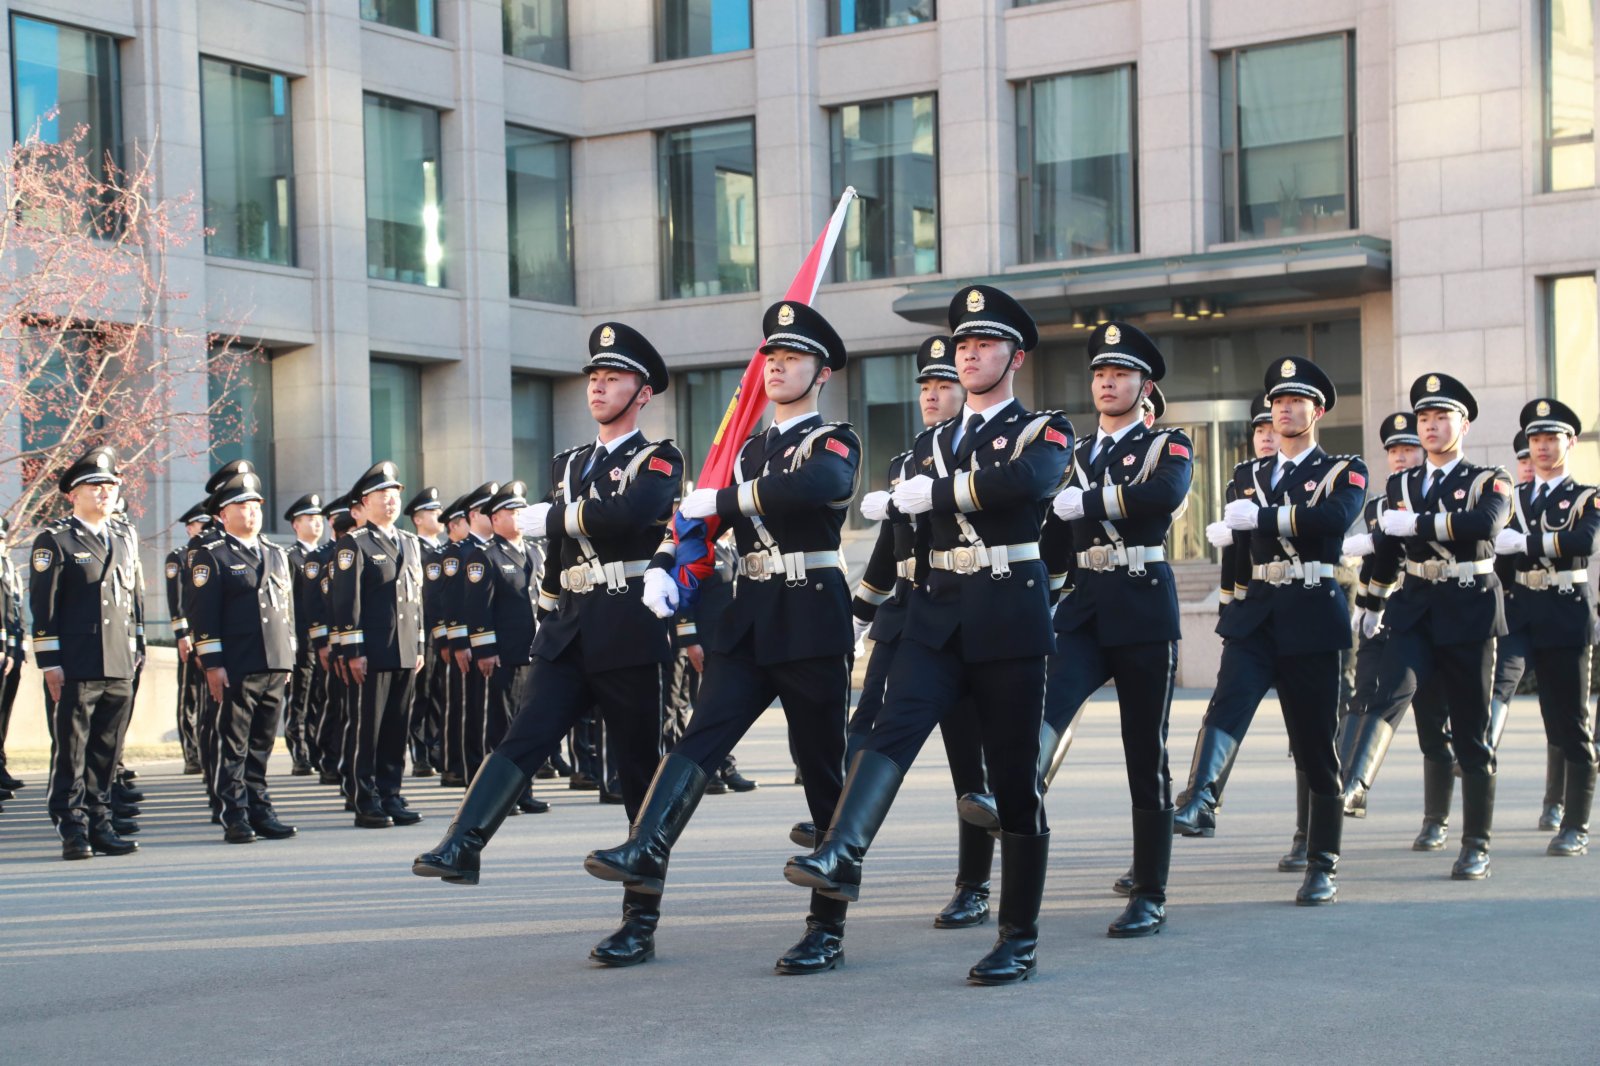 1月10日，首個中國人民警察節之際，公安部機關舉行警旗昇旗儀式。全國公安機關受表彰先進集體和英模代表、部機關幹部代表300餘人參加儀式，重溫入警誓詞，高唱警歌，並向警旗敬禮。 （中新社）